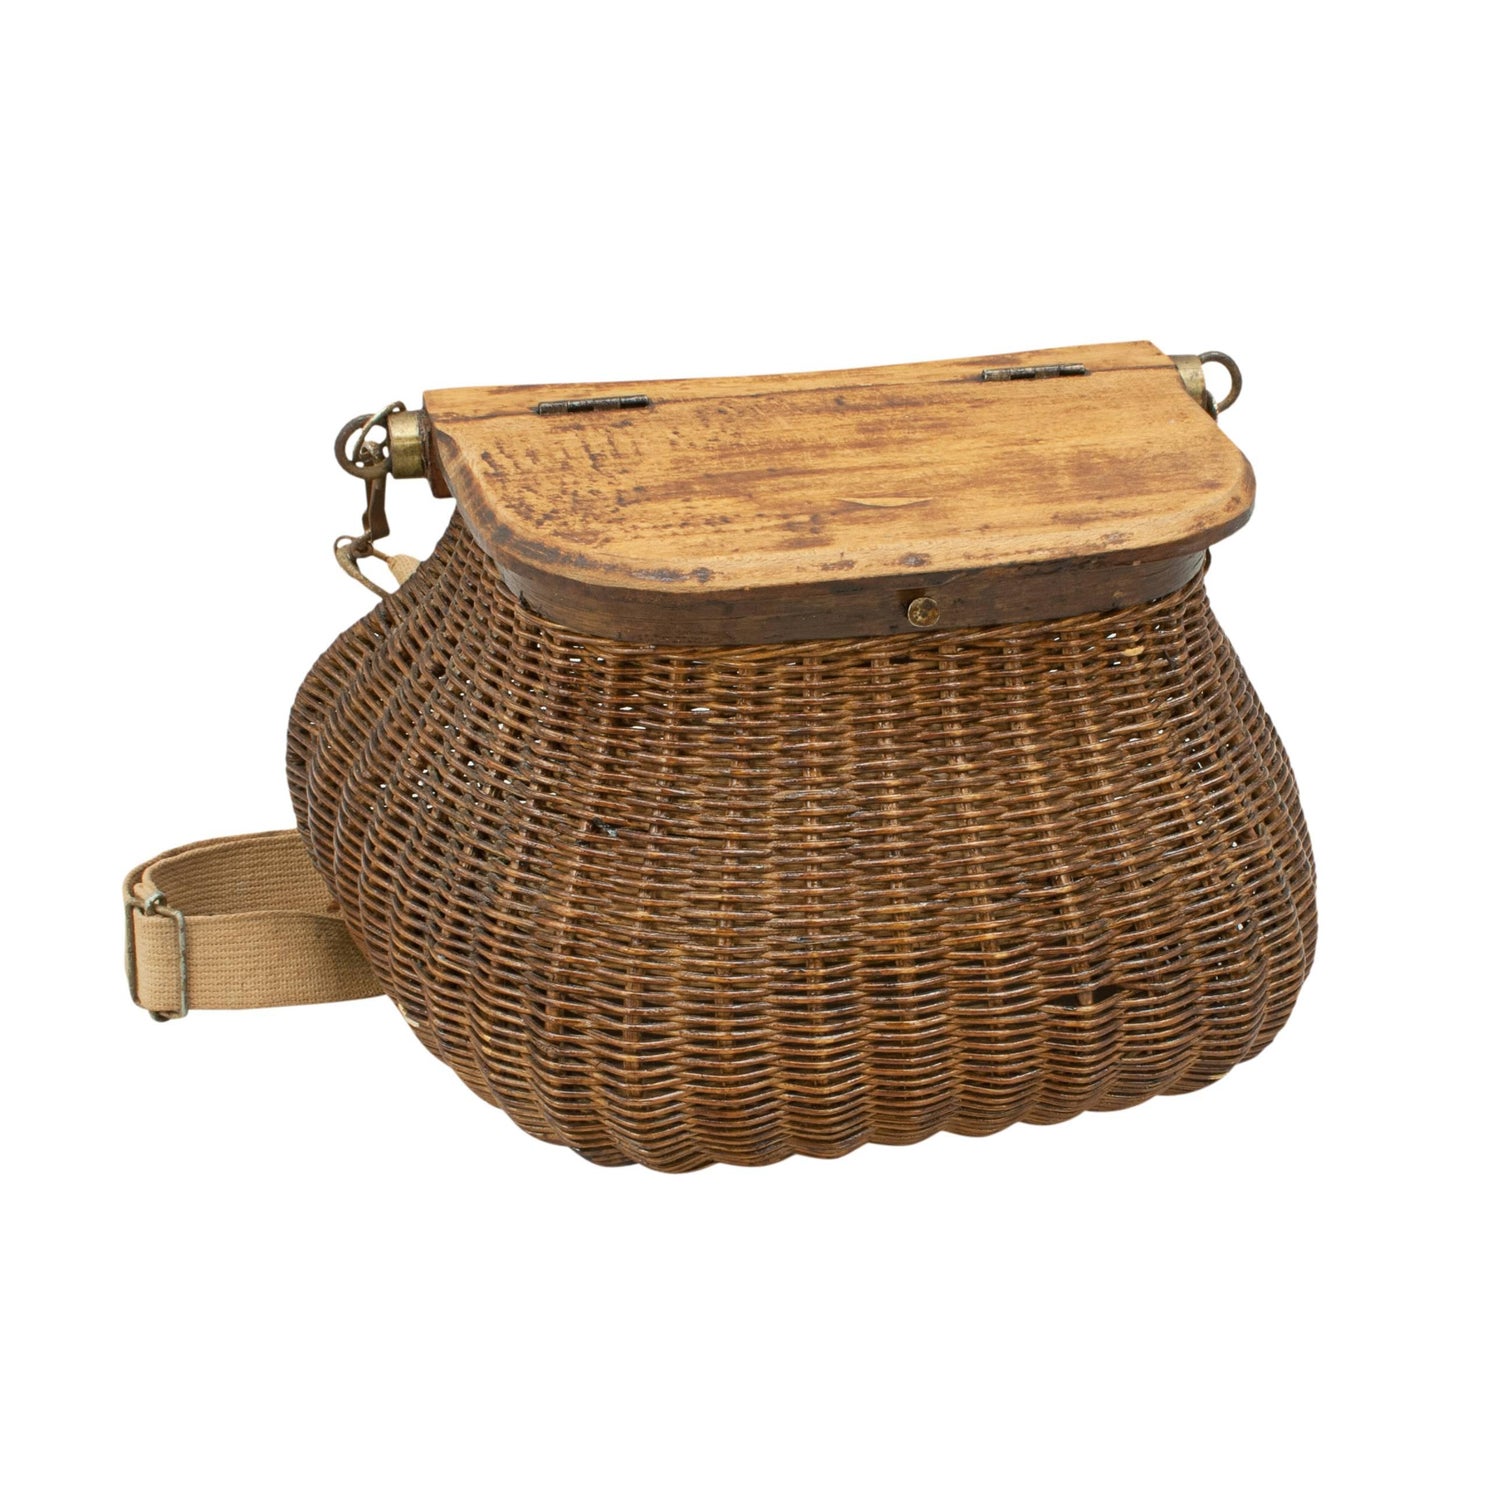 Wicker Fishing Basket - 6 For Sale on 1stDibs